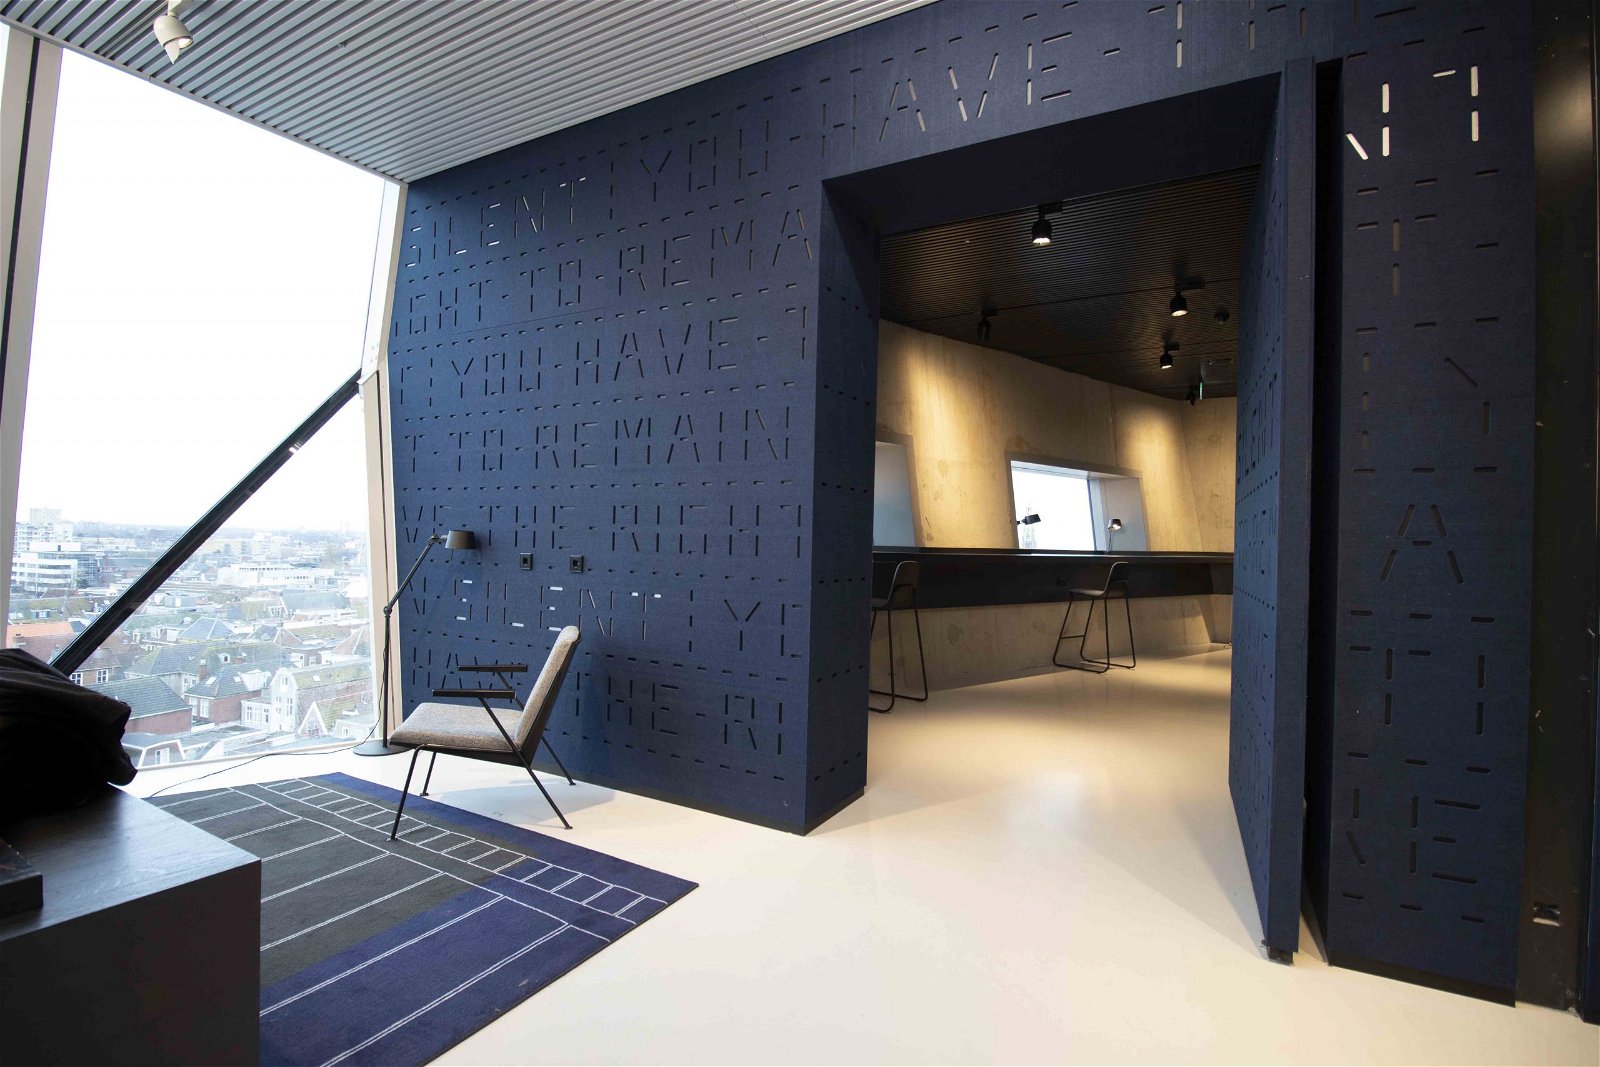 Forum Groningen soundproof pivot doors designed by Pieter Bannenberg, NL Architects - FritsJurgens pivot hinges Inside.